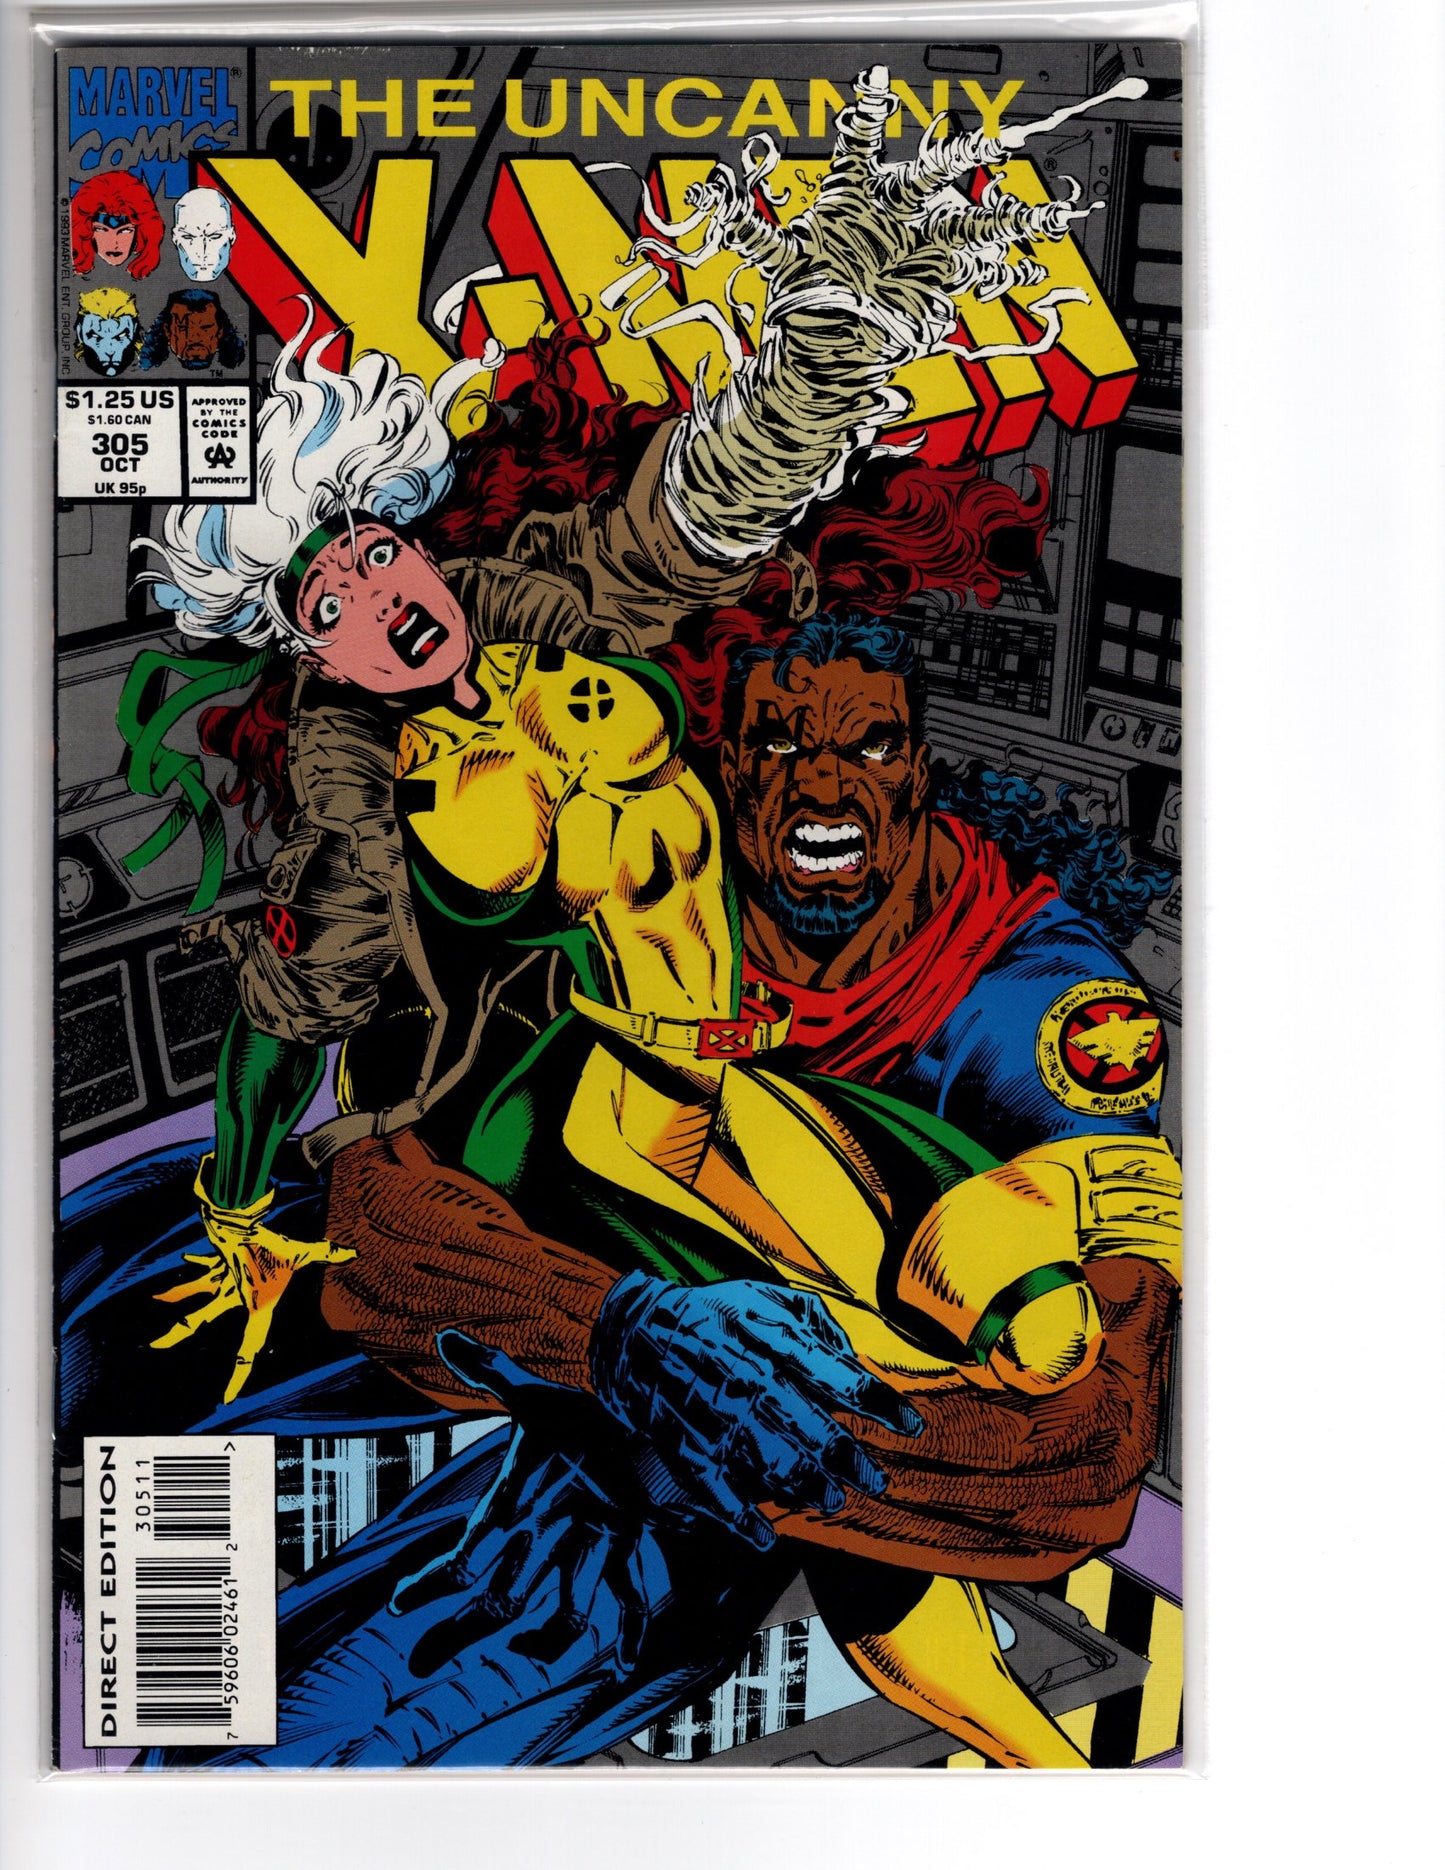 The Uncanny X-Men No. 305